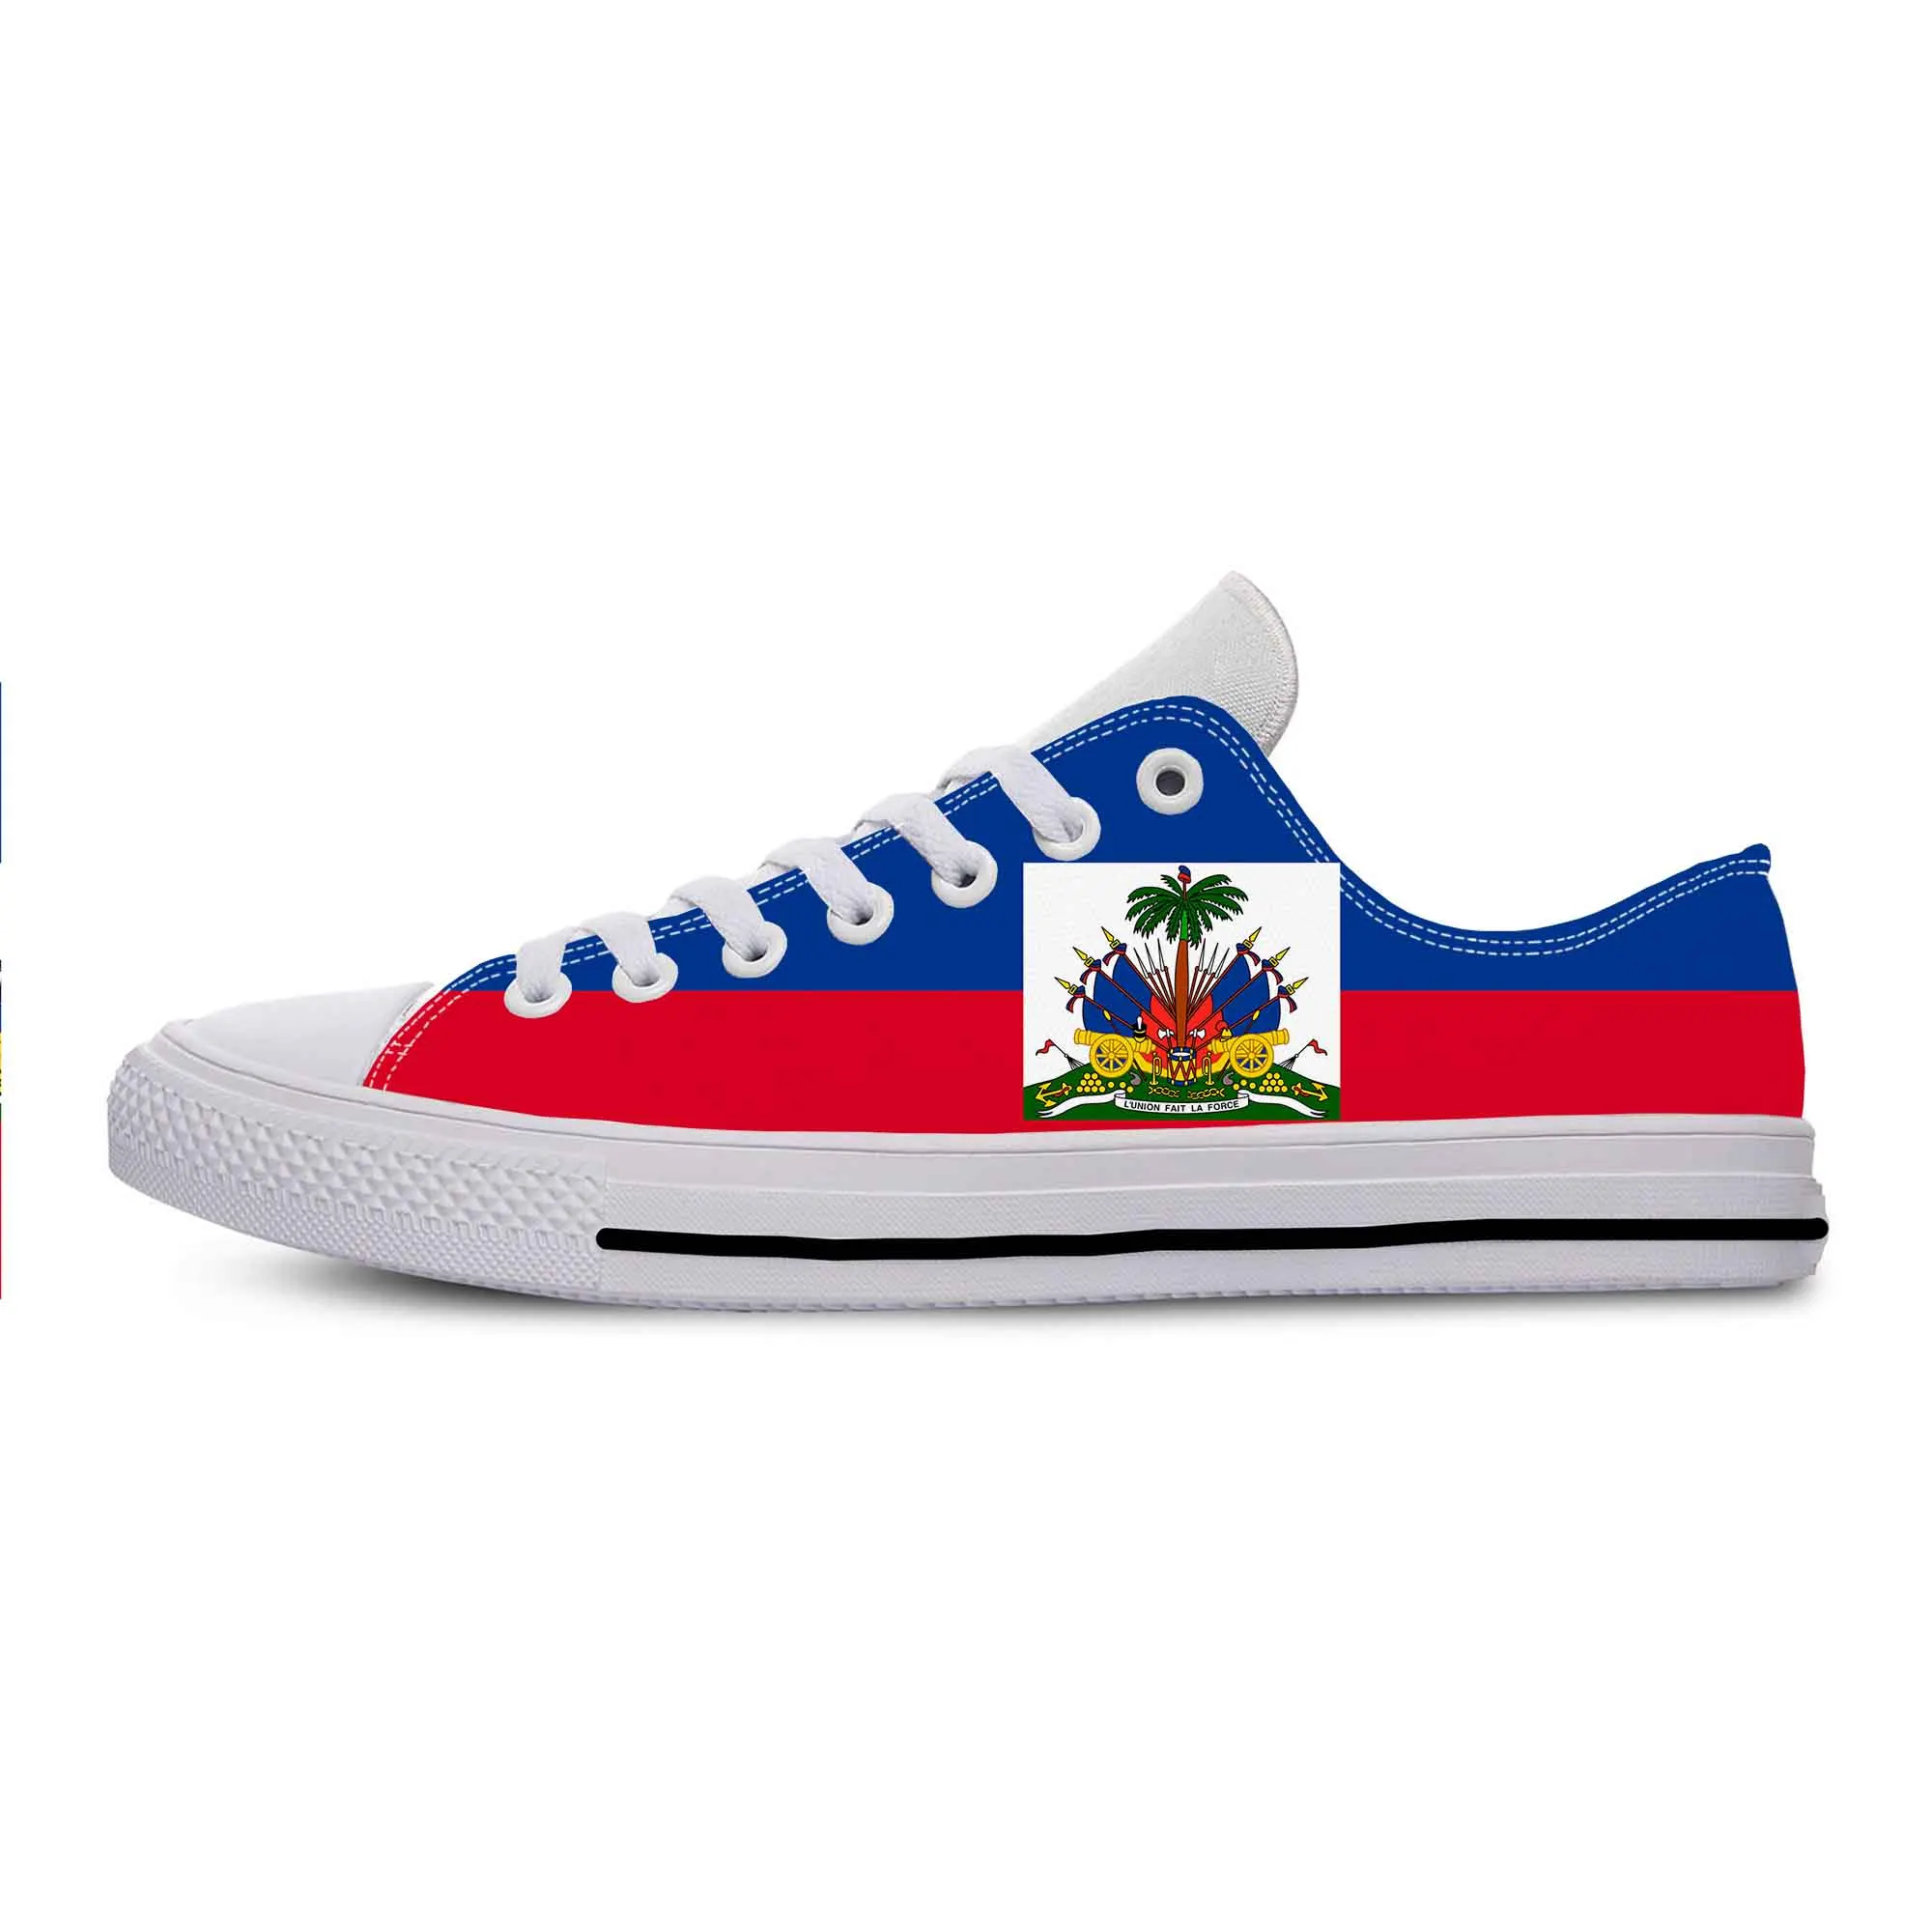 Гаити, Флаг Гаити, Патриотическая гордость, Модная популярная повседневная тканевая обувь с низким верхом, Удобные Дышащие Мужские и женские кроссовки с 3D-принтом.